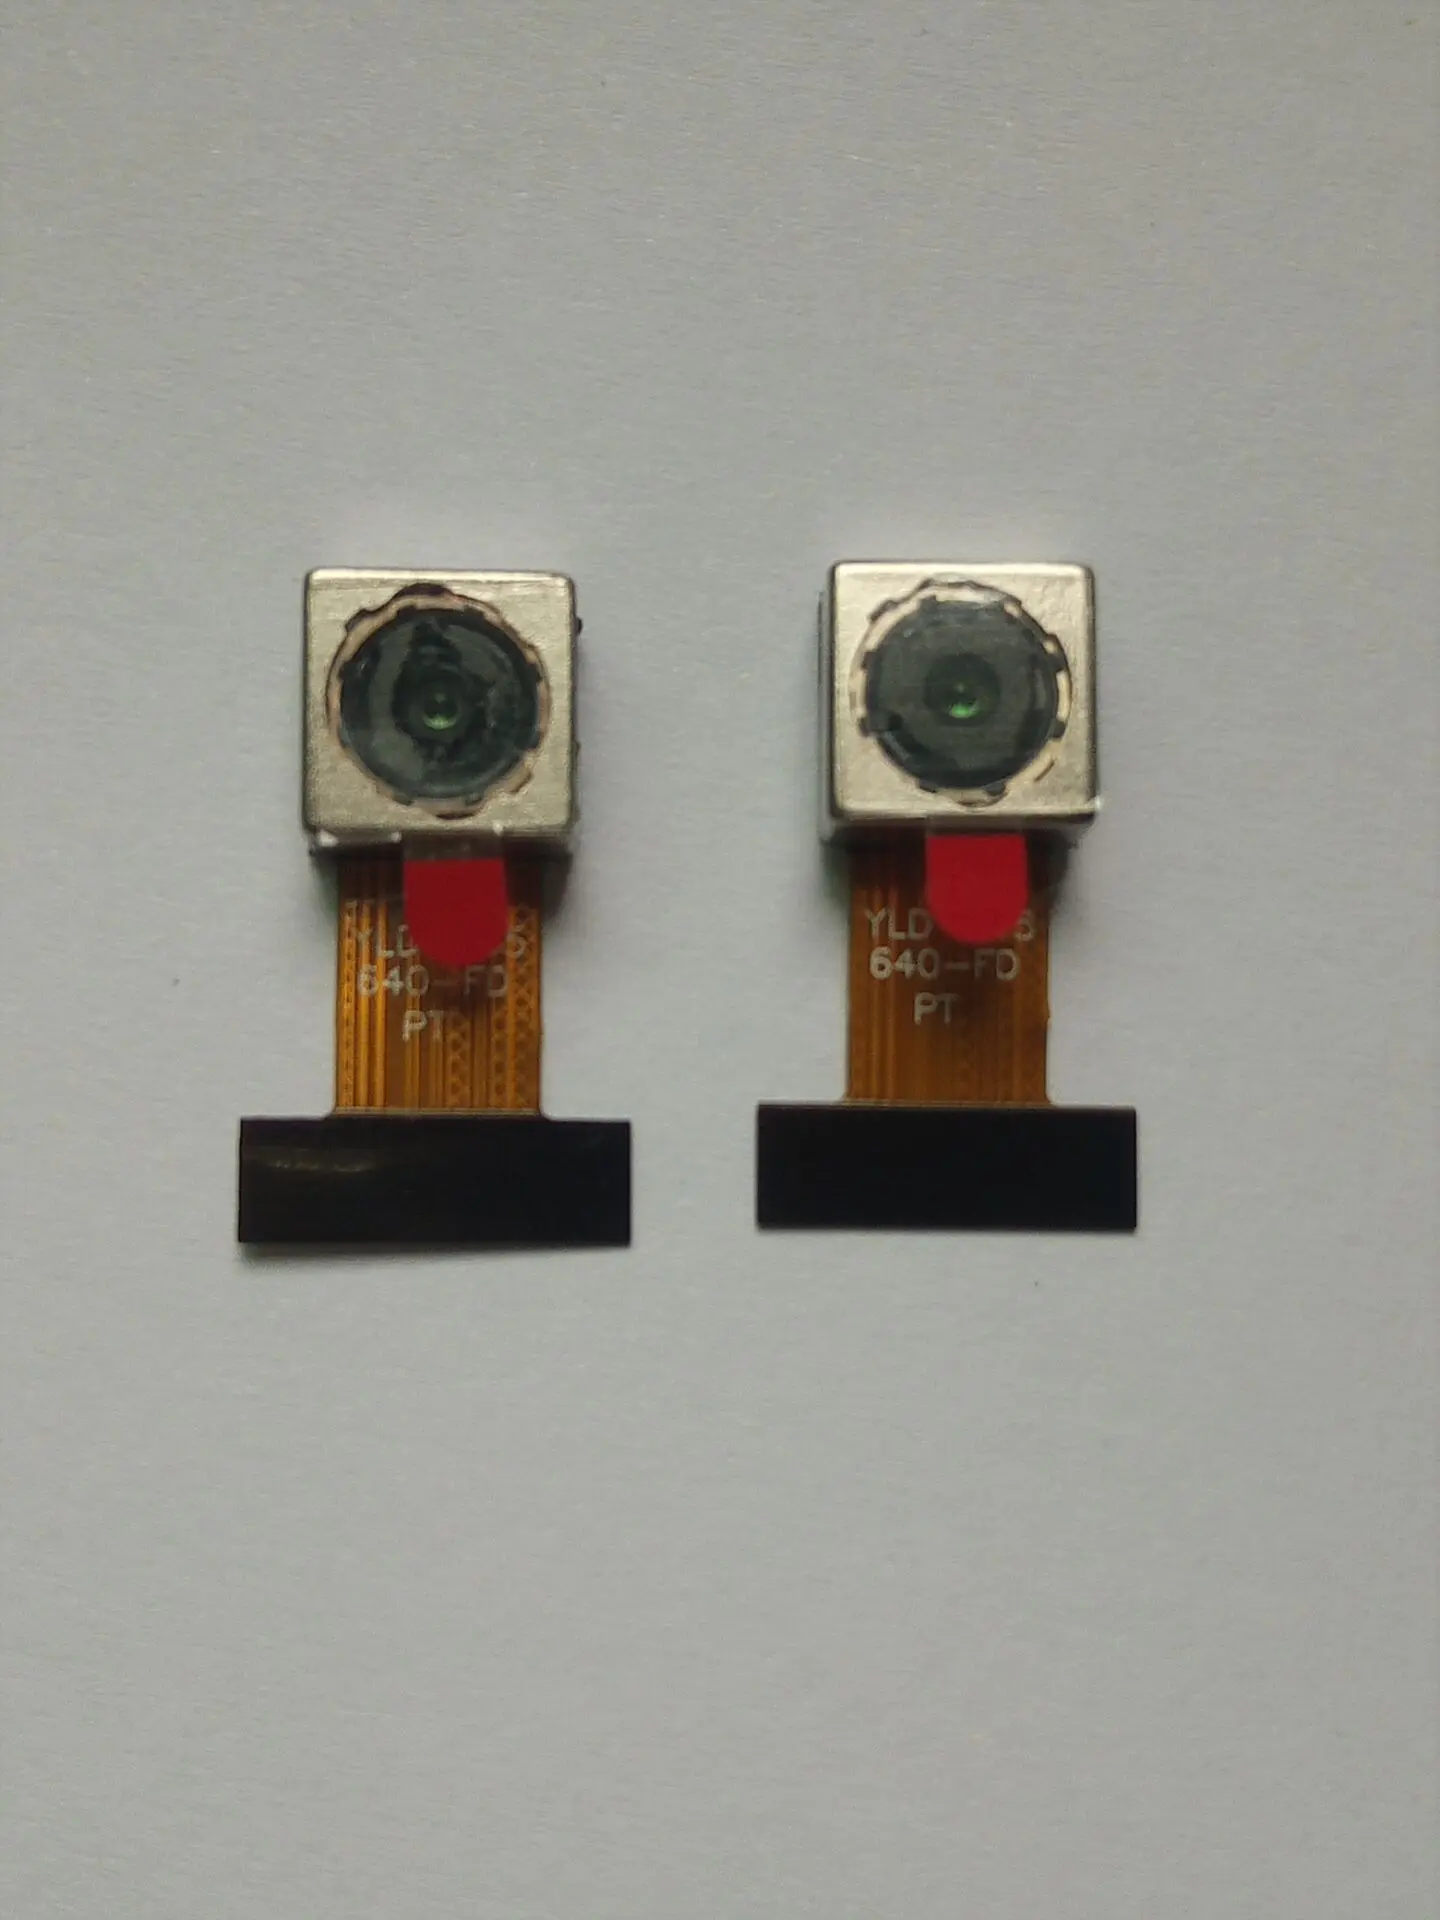 

Модуль камеры MP4 с золотым пальцем, 2 шт. X 5,0 МП, обратная камера vw, модуль цветного CMOS-датчика OV5640 (OV5640), Датчик потока